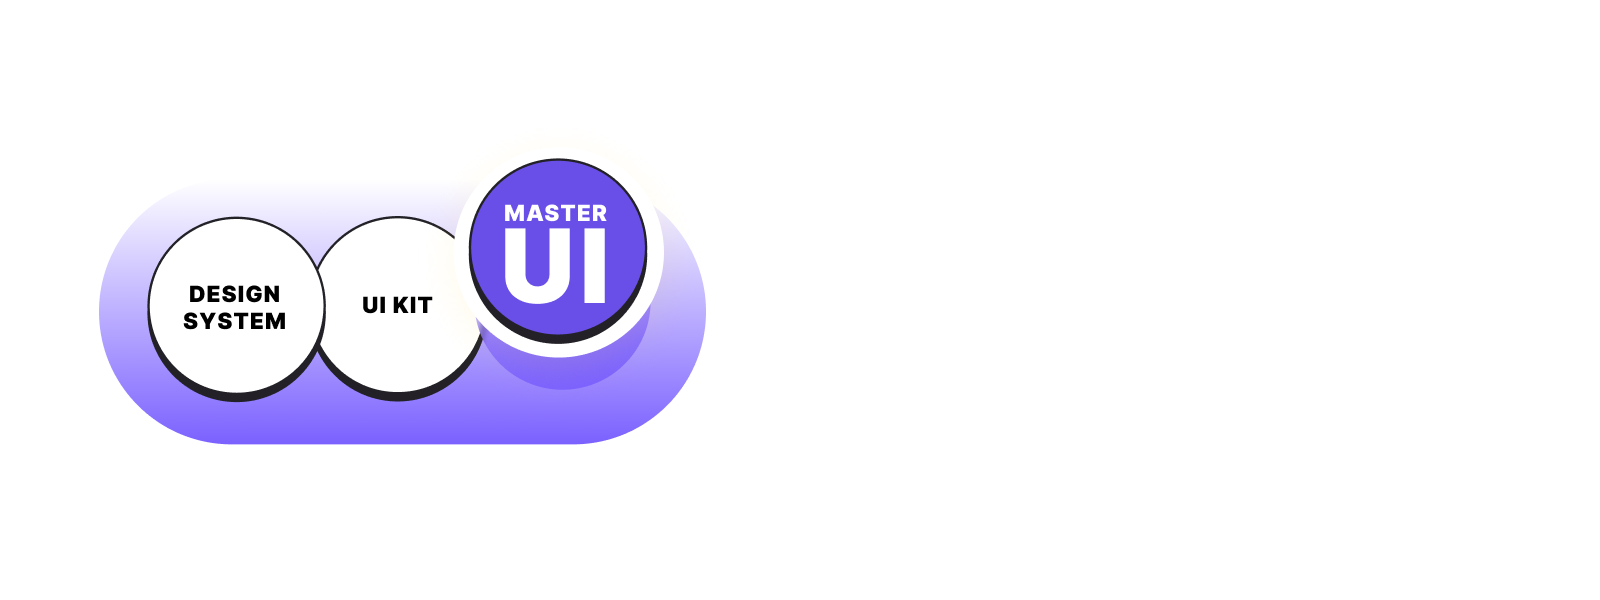 So… Design System, UI Kit or… MasterUI